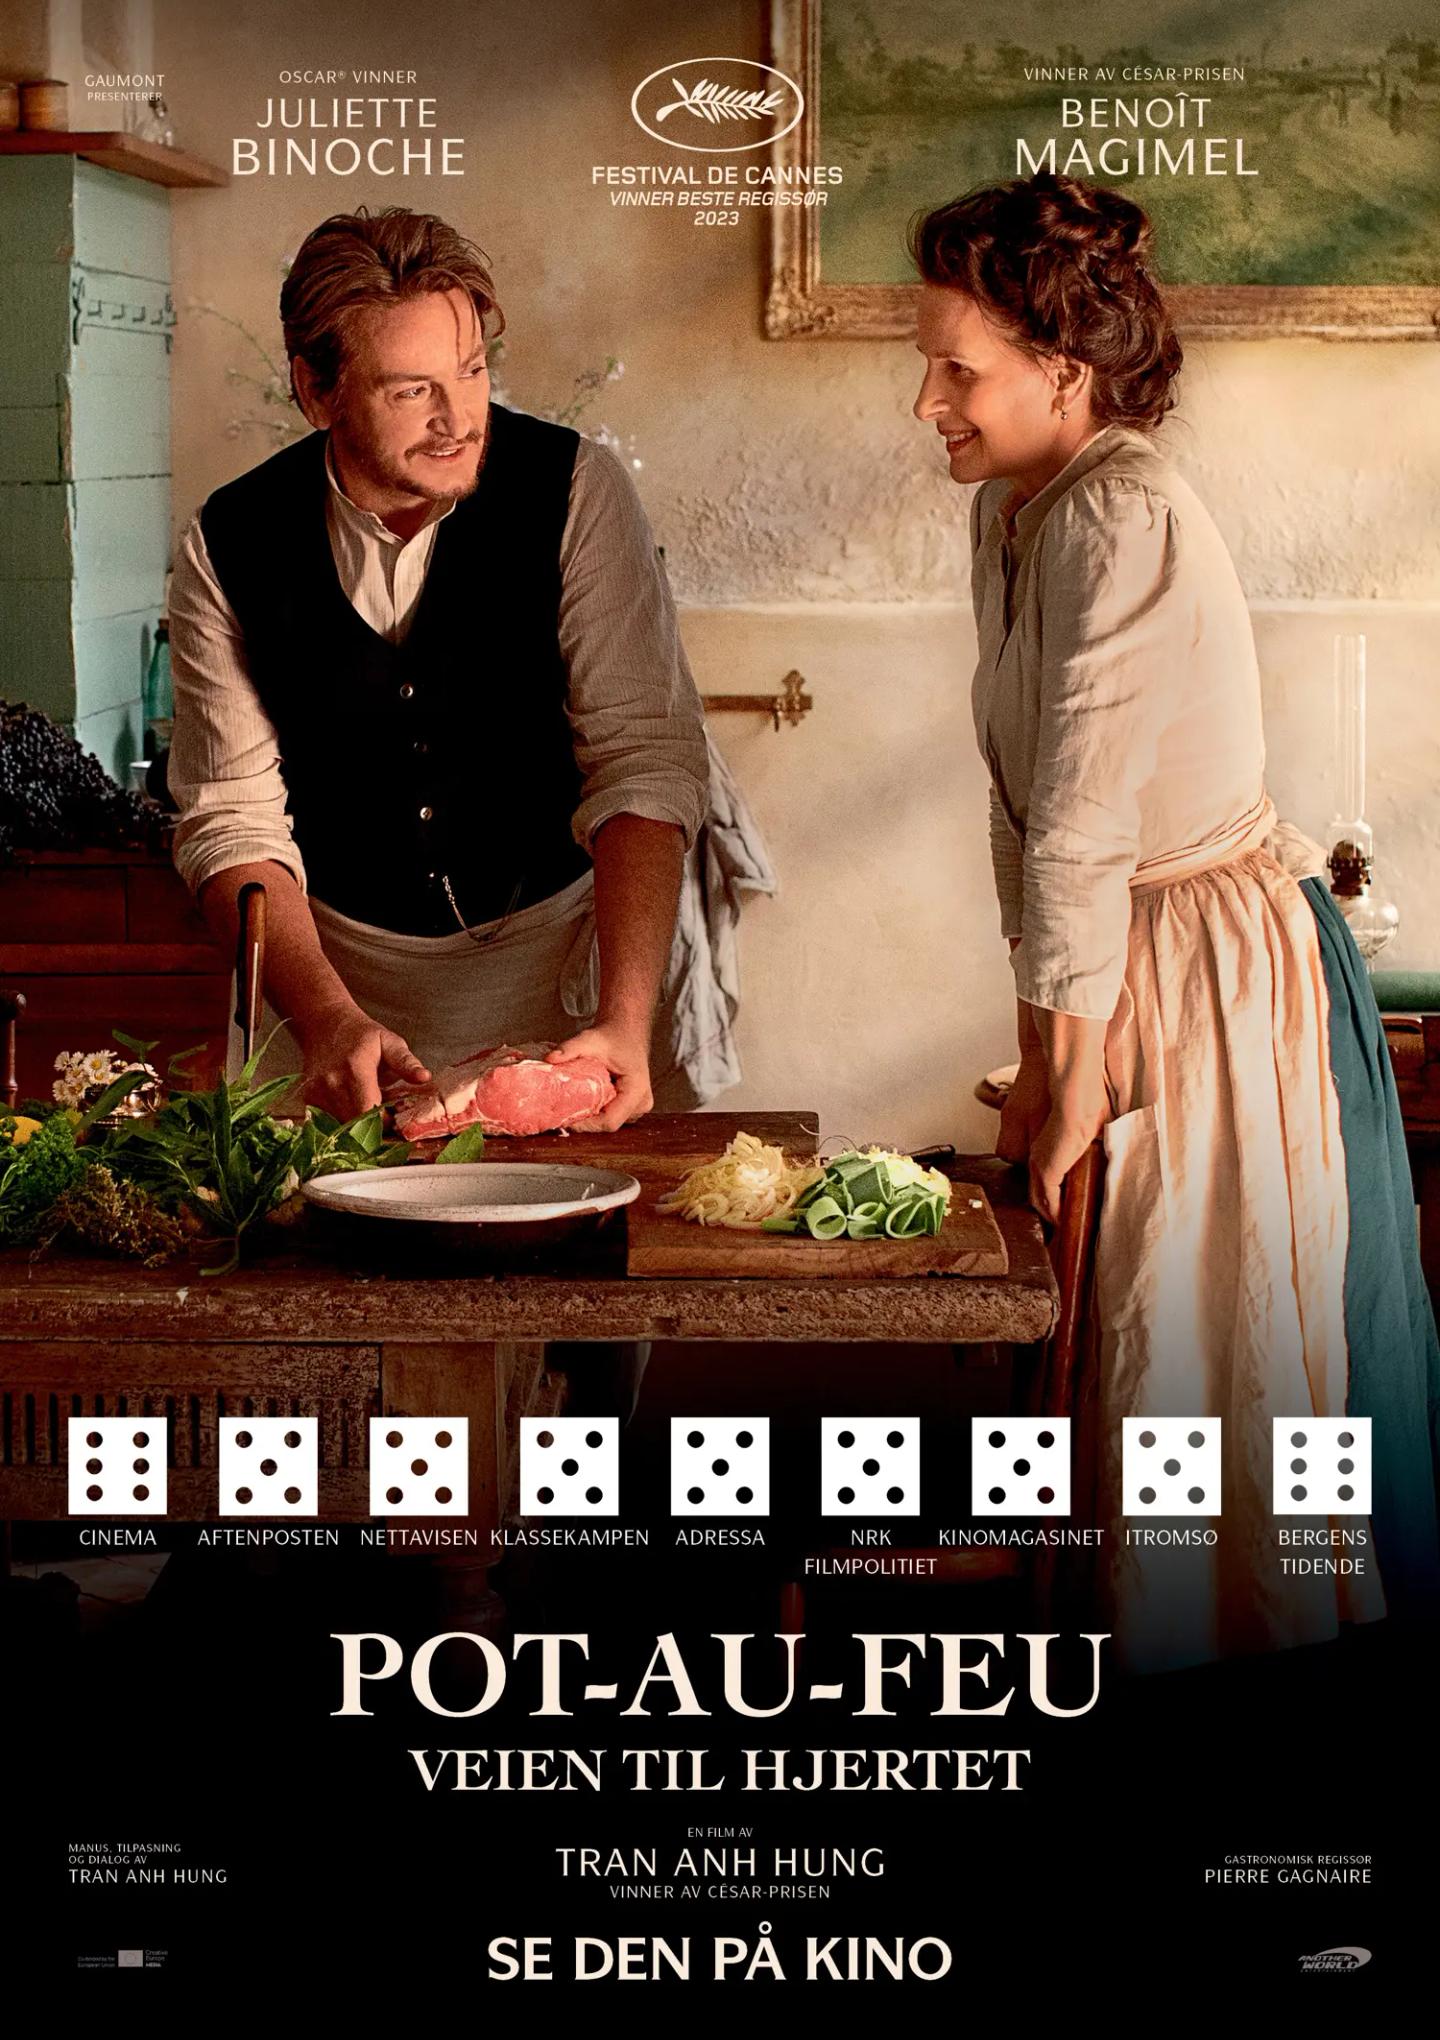 Plakat for 'Pot-au-feu - Veien til hjertet'